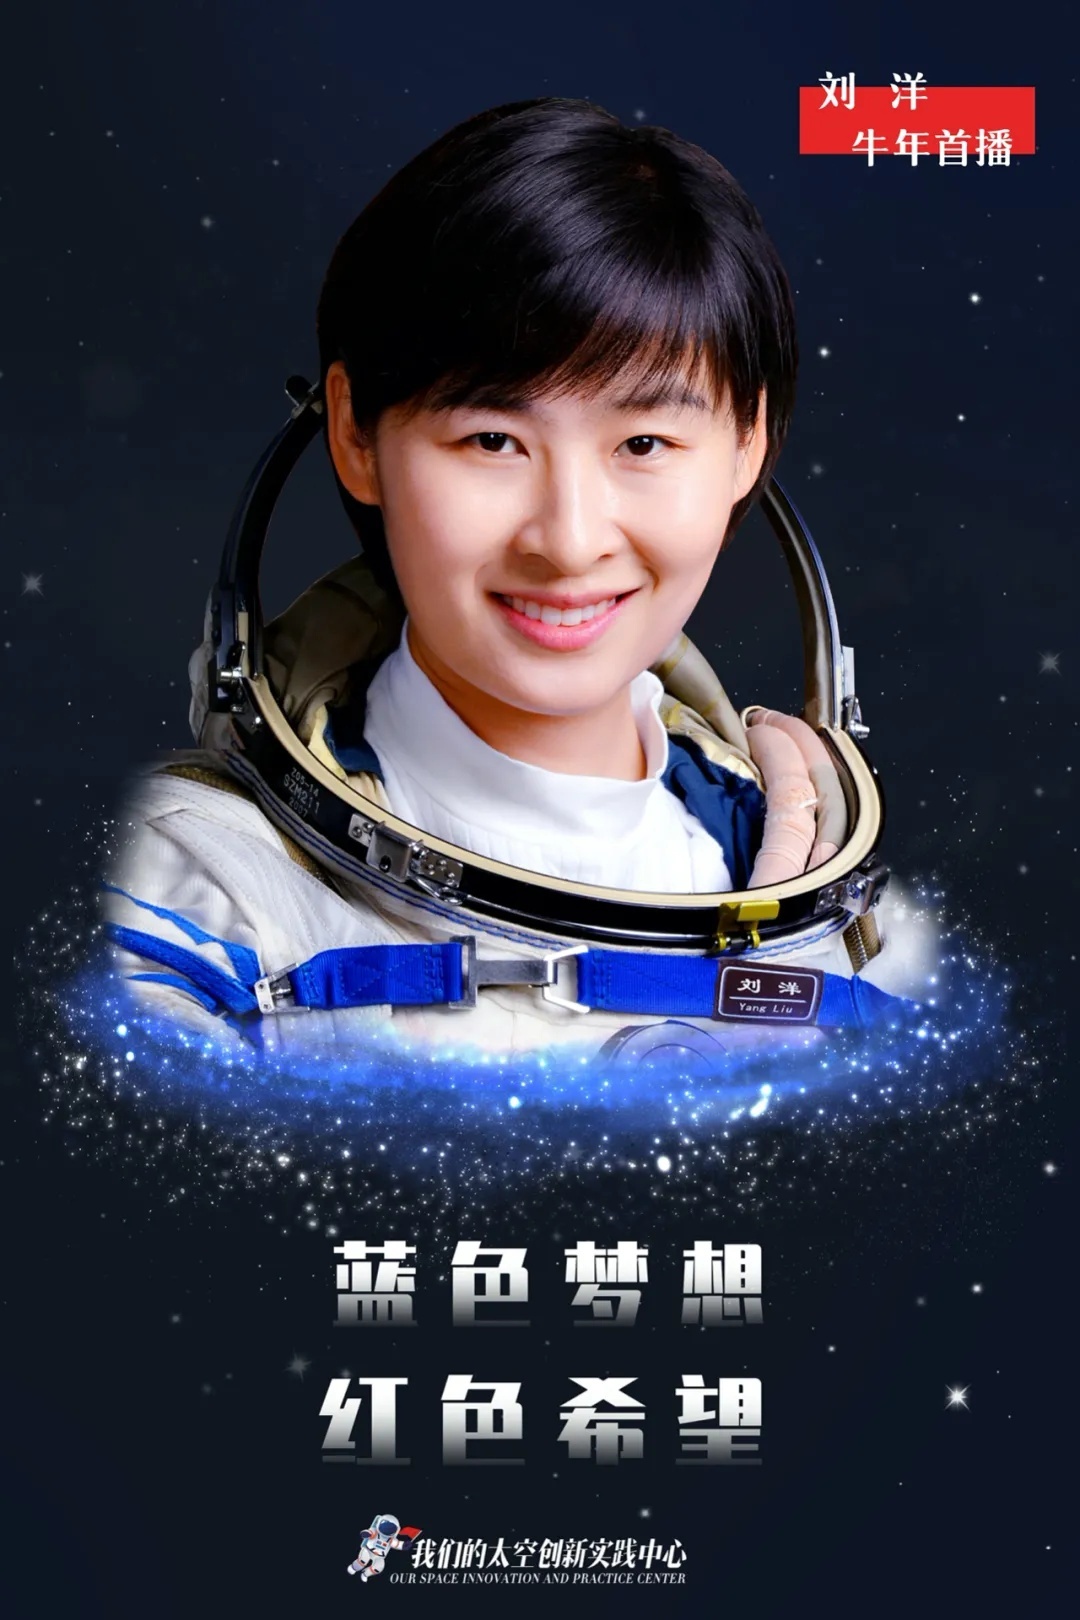 英雄航天员刘洋牛年首播蓝色梦想红色希望太空印象